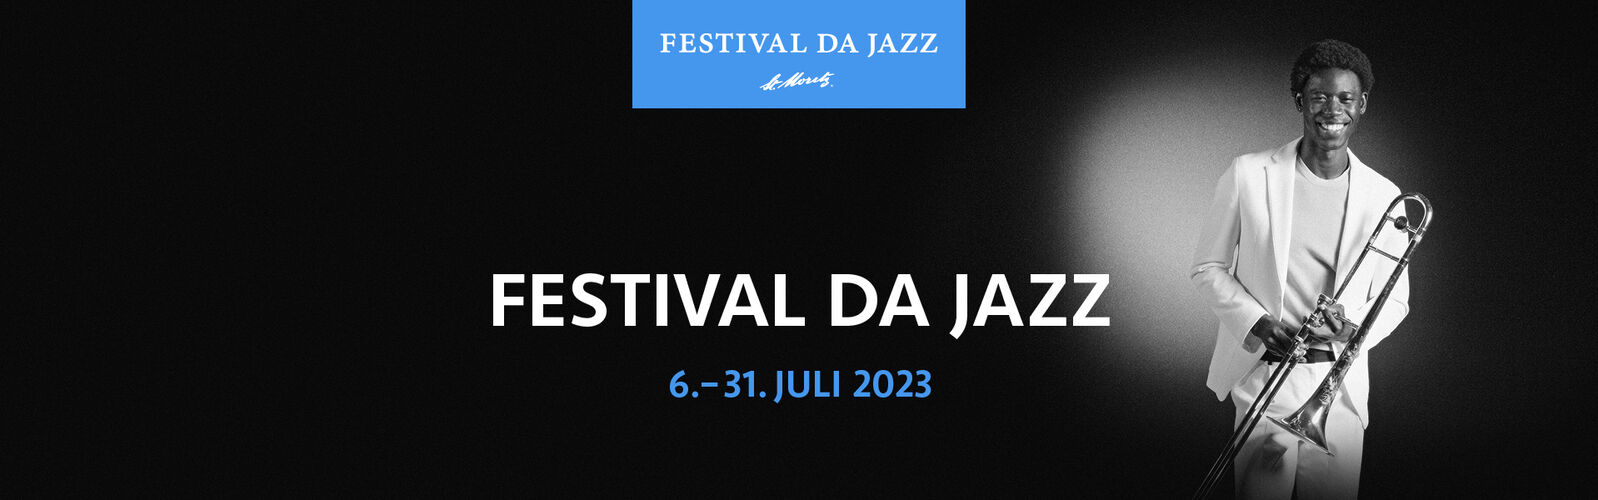 Festival da Jazz - 6. bis 31. Juli 2023